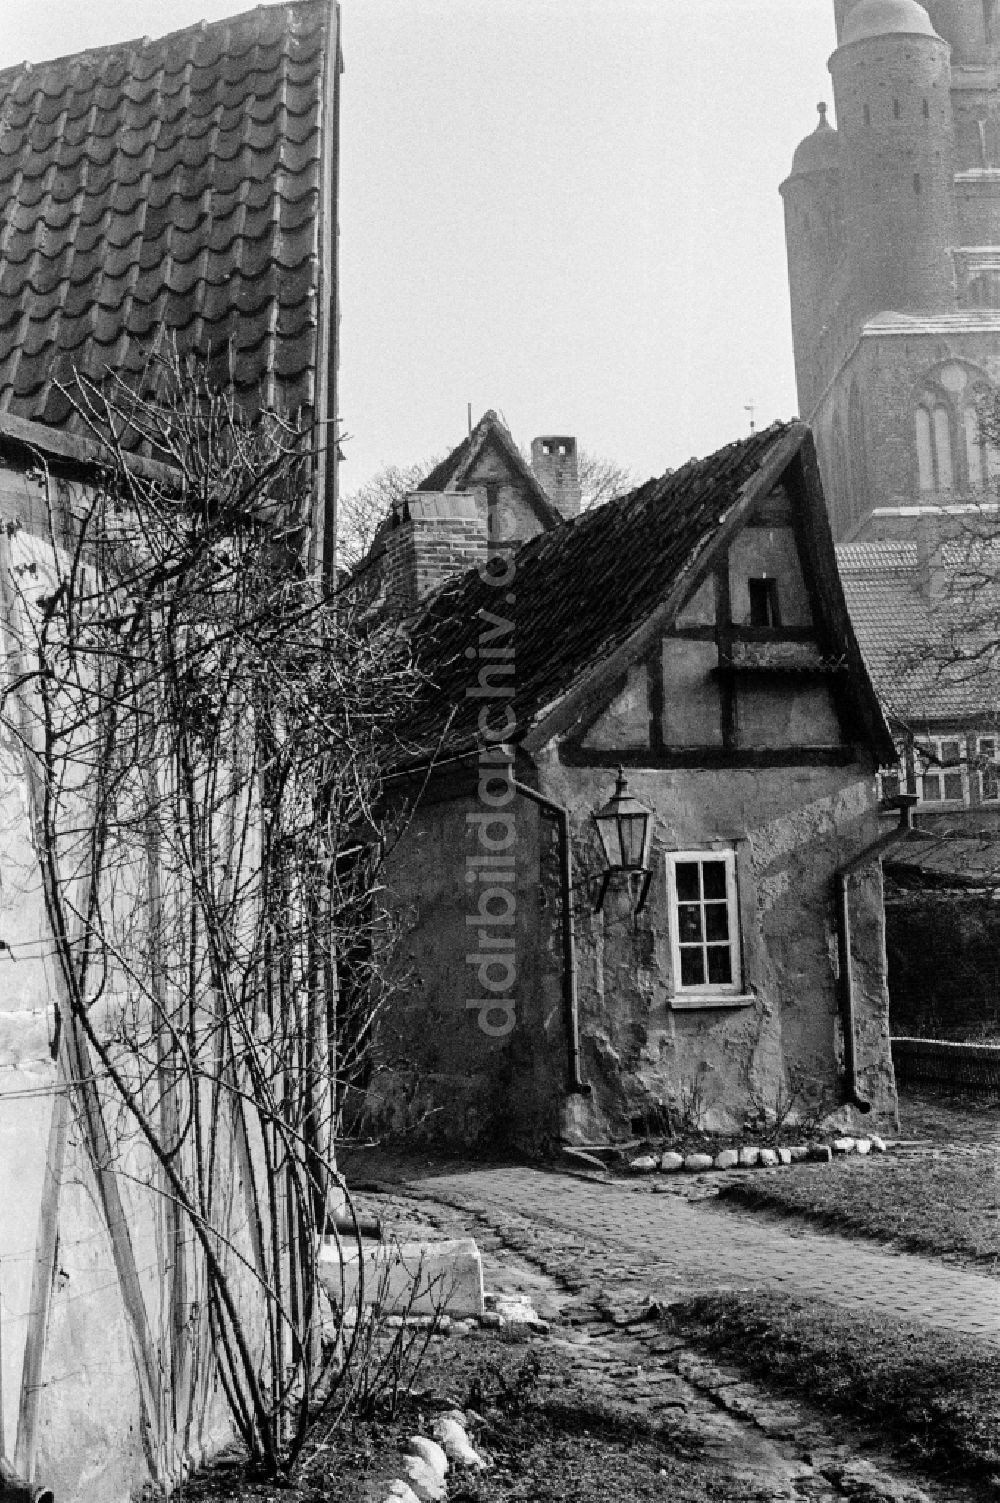 DDR-Fotoarchiv: Greifswald - Fachwerk- Hausfassade in Greifswald in der DDR